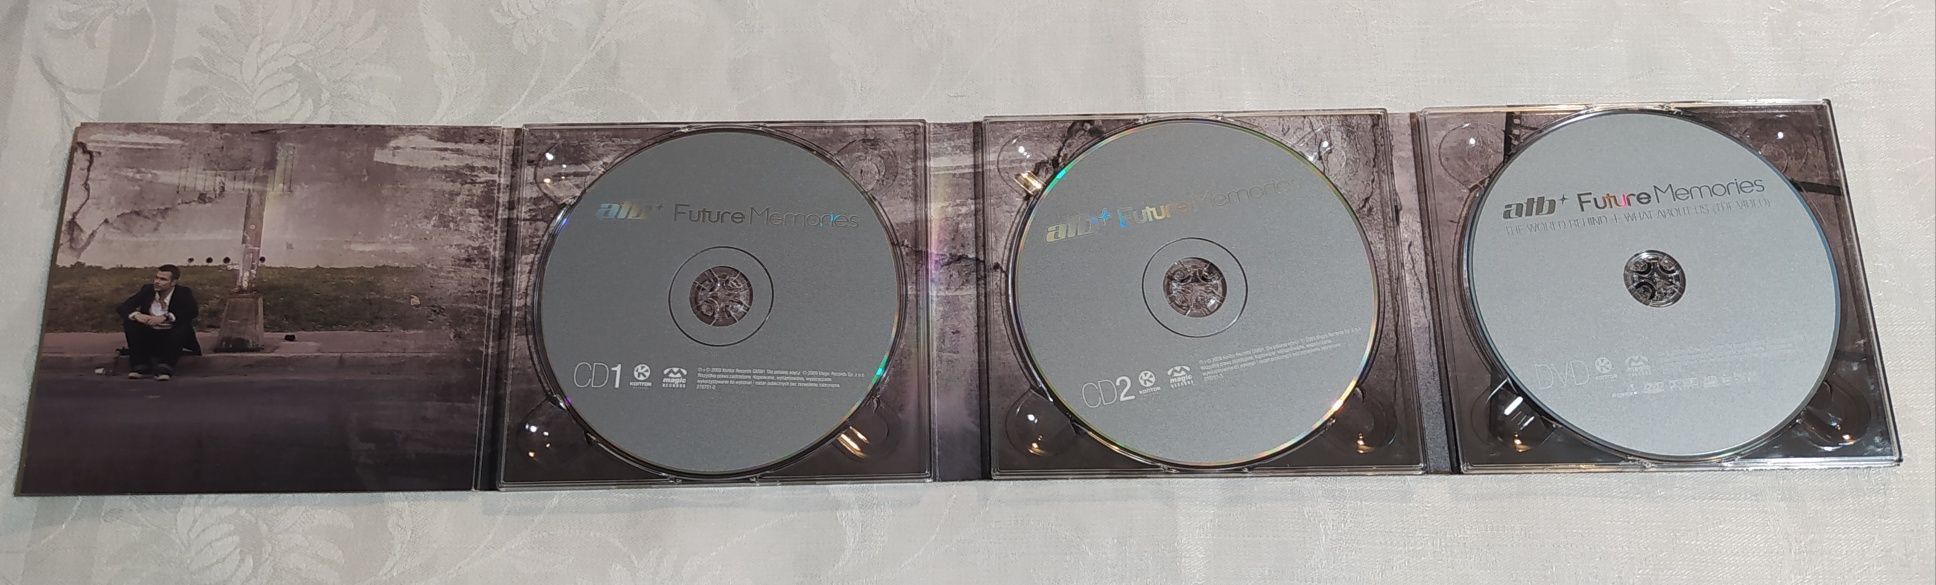 Płyty CD - Atb Future Memories / 2 CD + 1 DVD